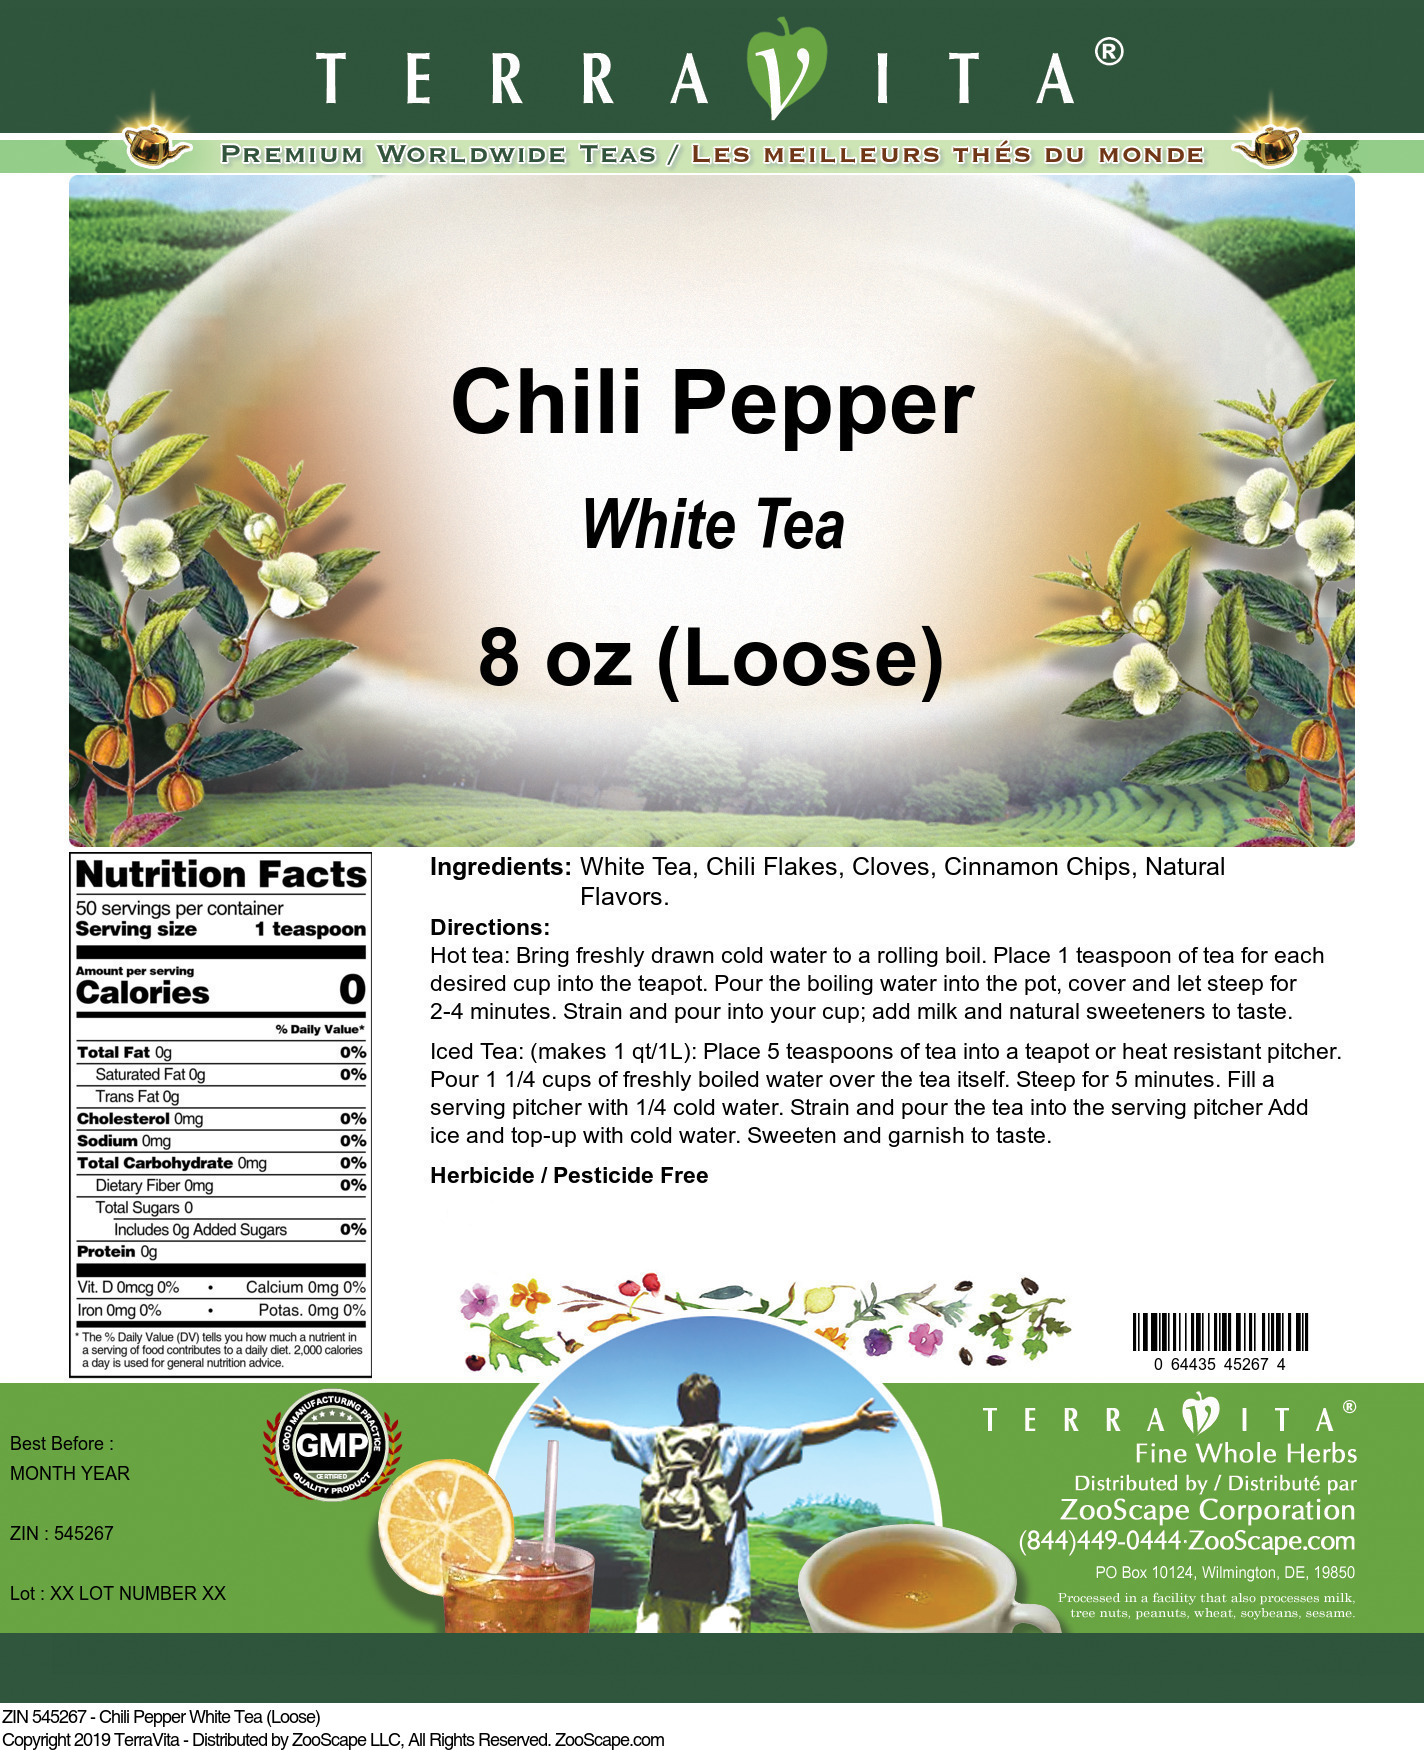 Chili Pepper White Tea (Loose) - Label